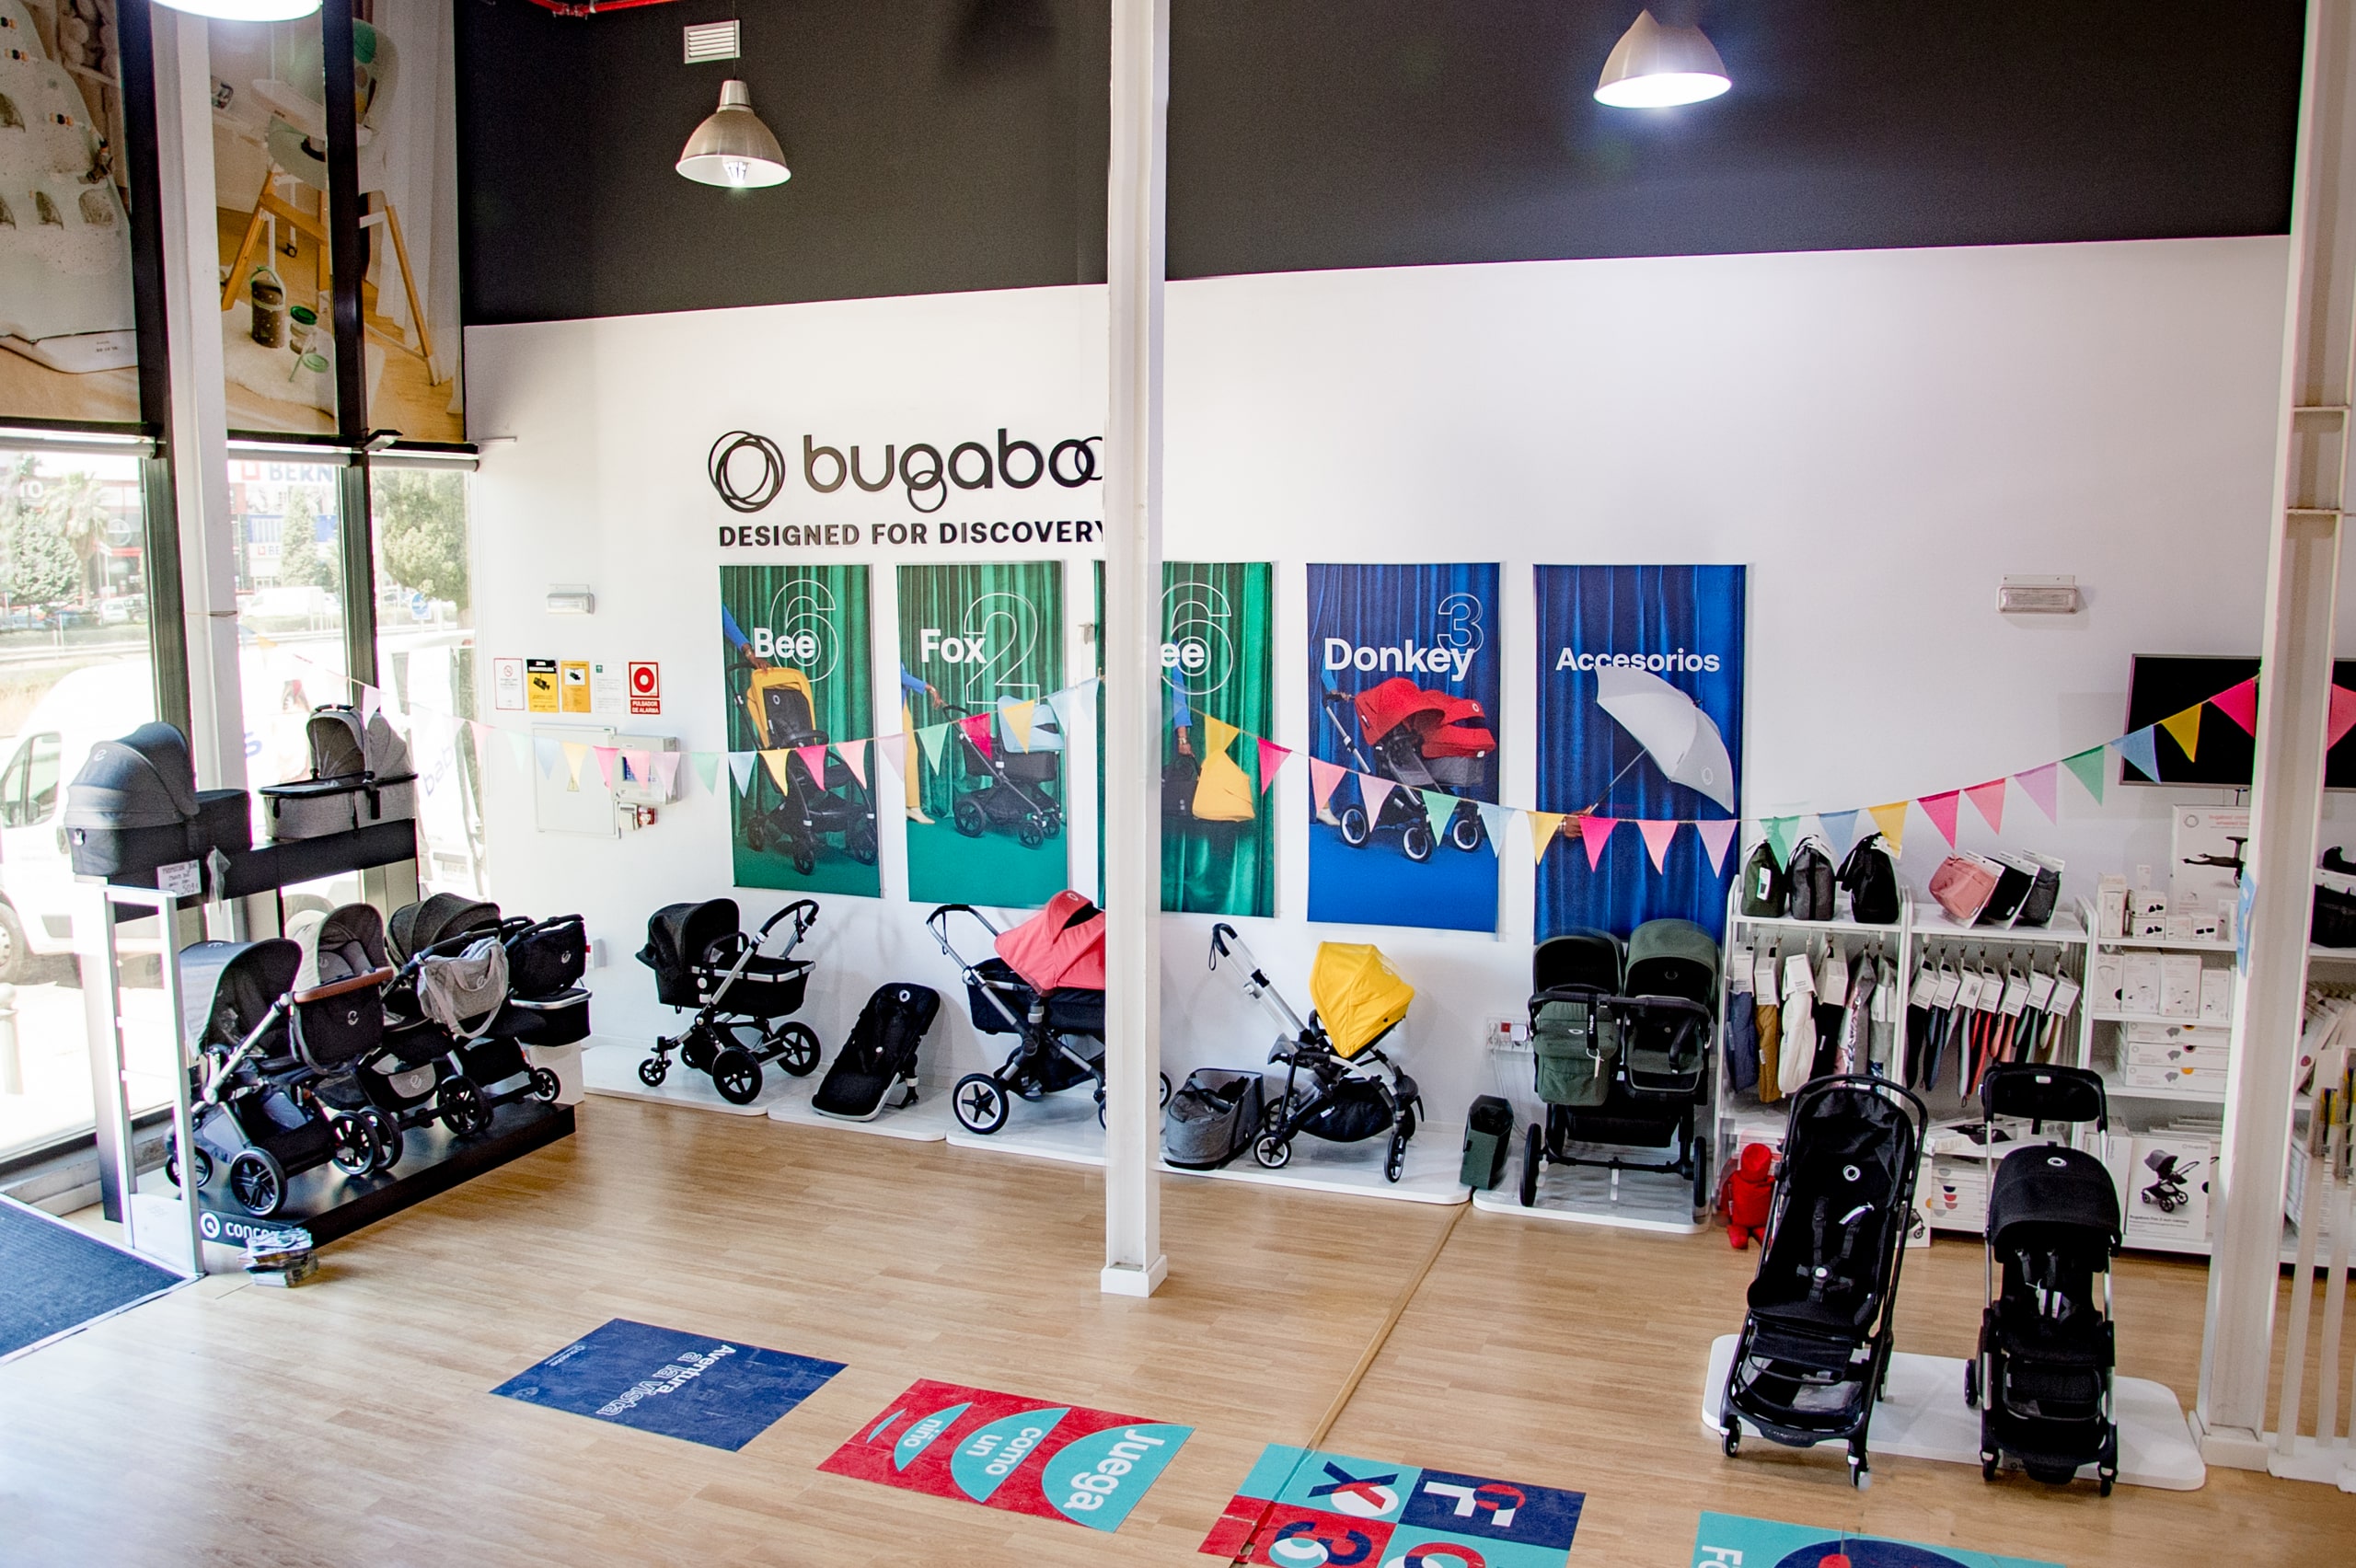 tienda oficial Bugaboo